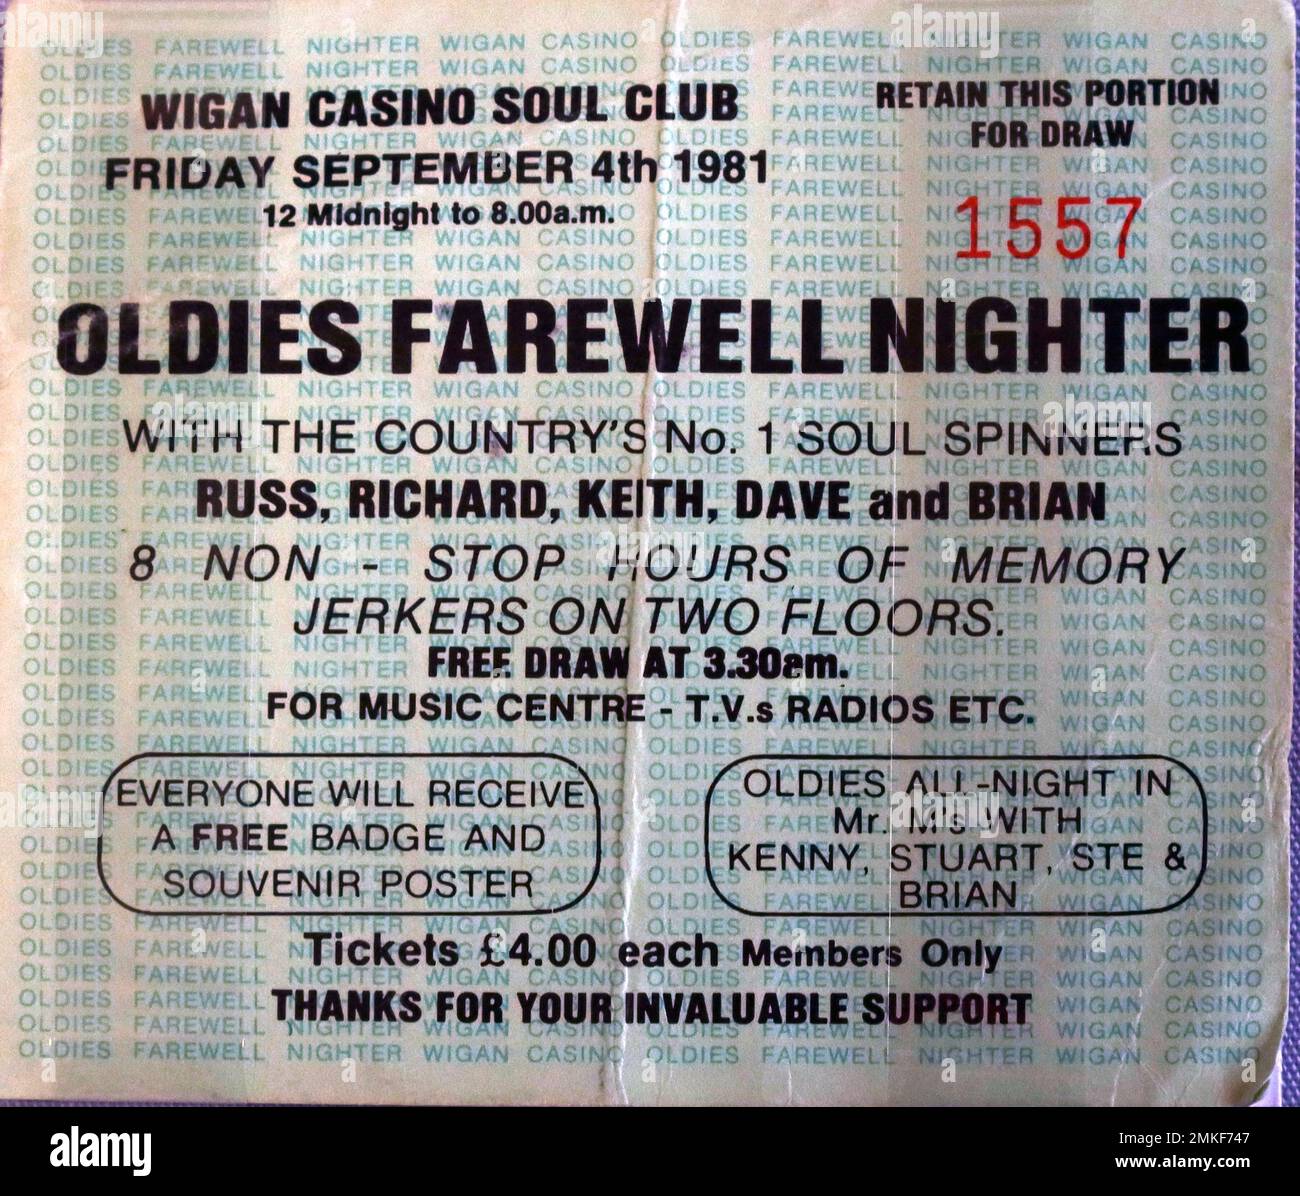 Wigan Casino Soul Club Ticket, allnight mit Russ, Richard, Keith, Dave und Brian, Kostenlose Verlosung um 3:30am, Freitag, 4. September 1981 Stockfoto